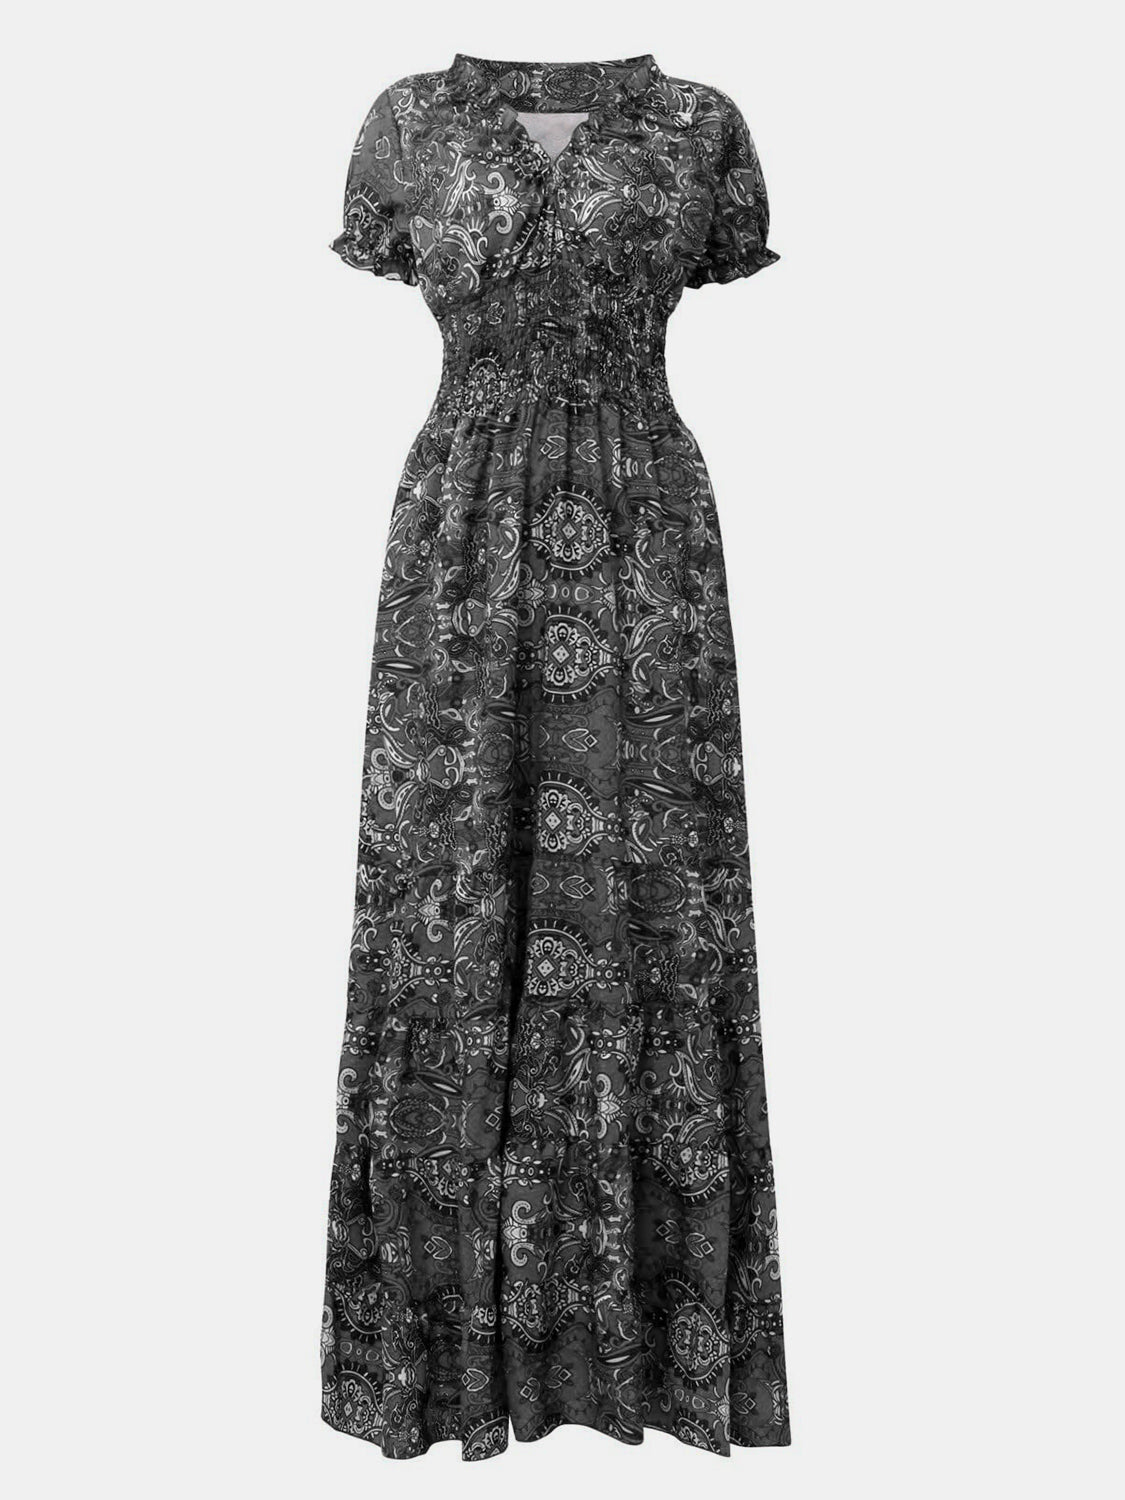 Smocked Waist Boho Maxi Dress | Ruffled Neckline Dress | Bohemian Maxi Dress